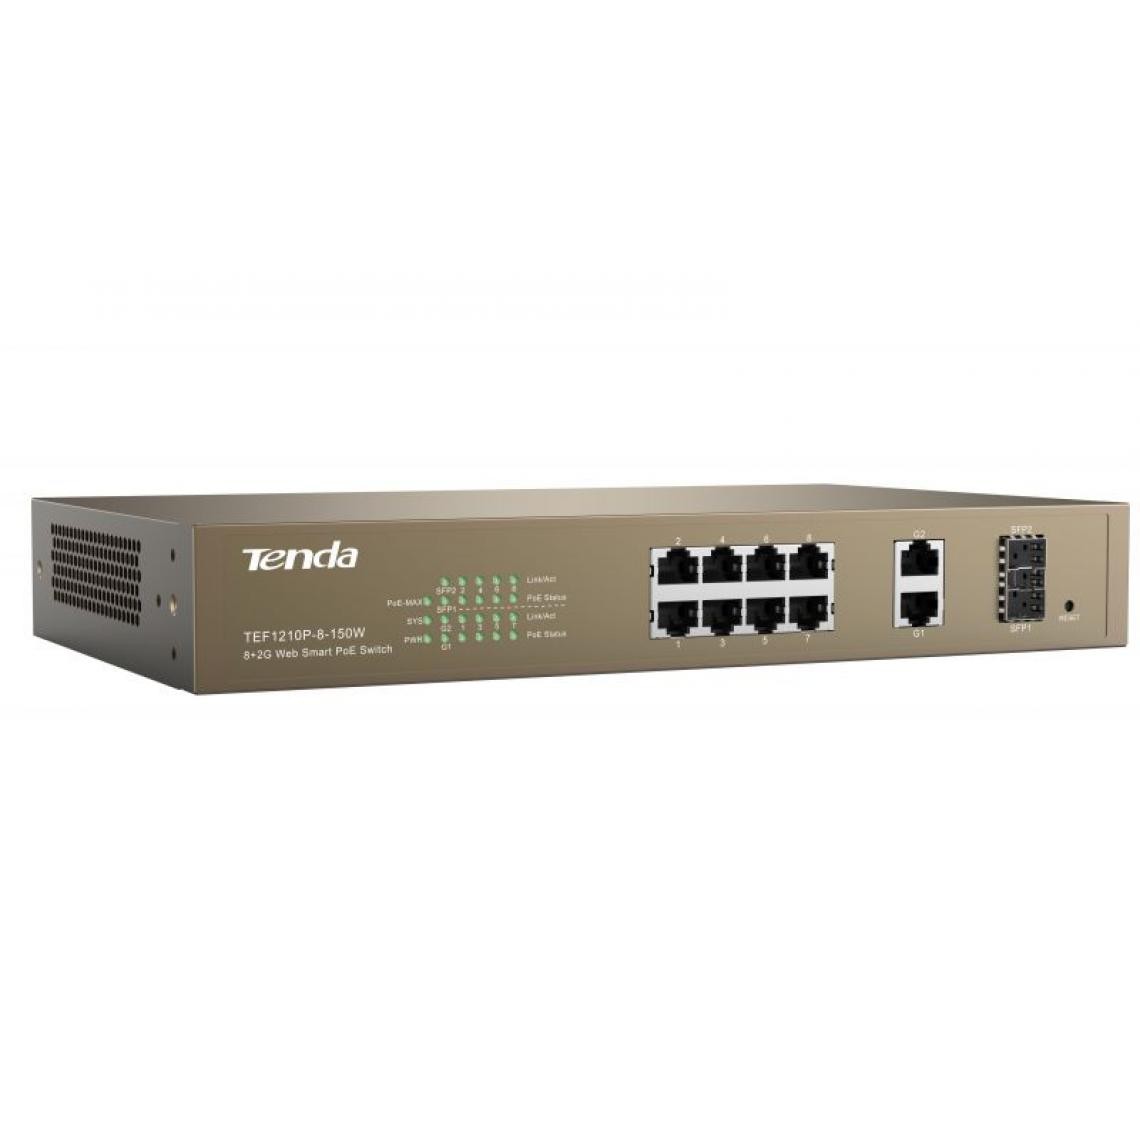 Inconnu - Tenda TEF1210P-8-150W Fast Ethernet (10/100) Gris Connexion Ethernet, supportant l'alimentation via ce port (PoE) - Switch